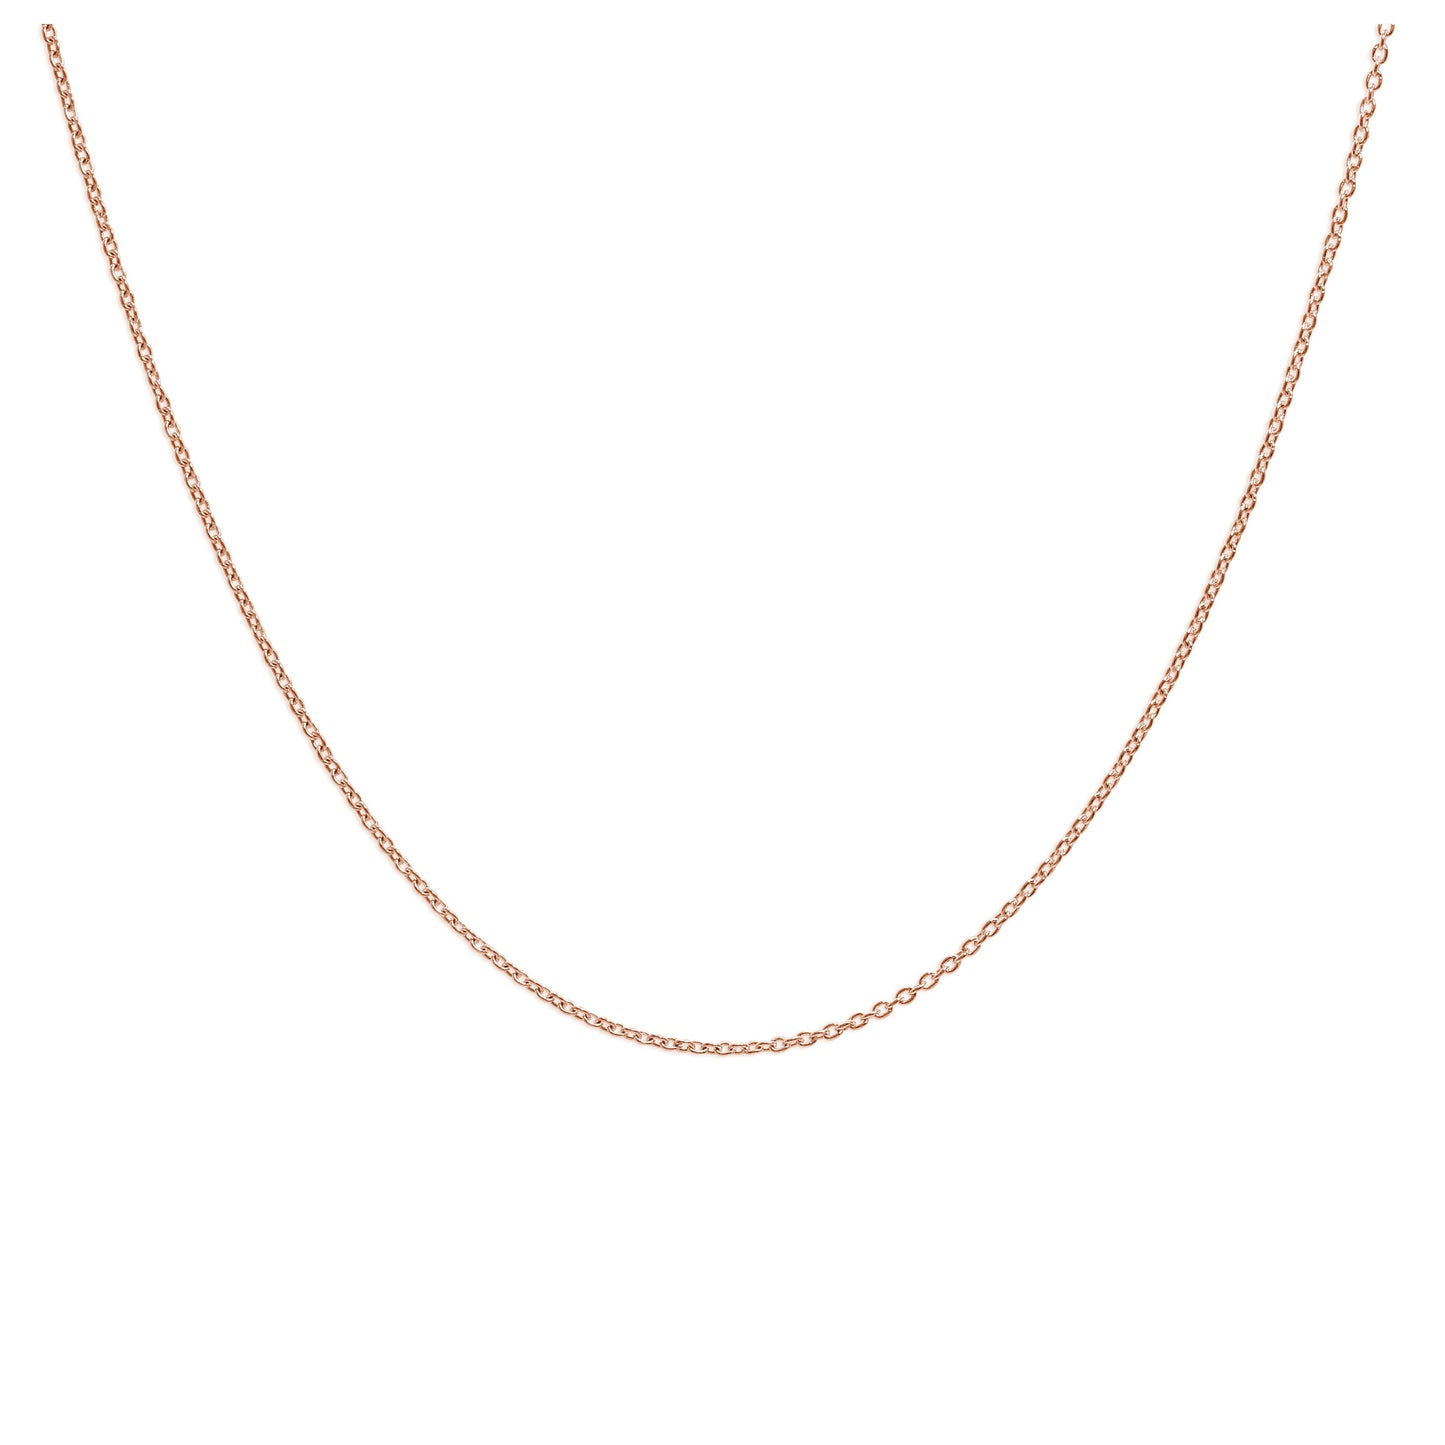 Rose Gold Plated Sterling Silver Adjustable Slider Necklace